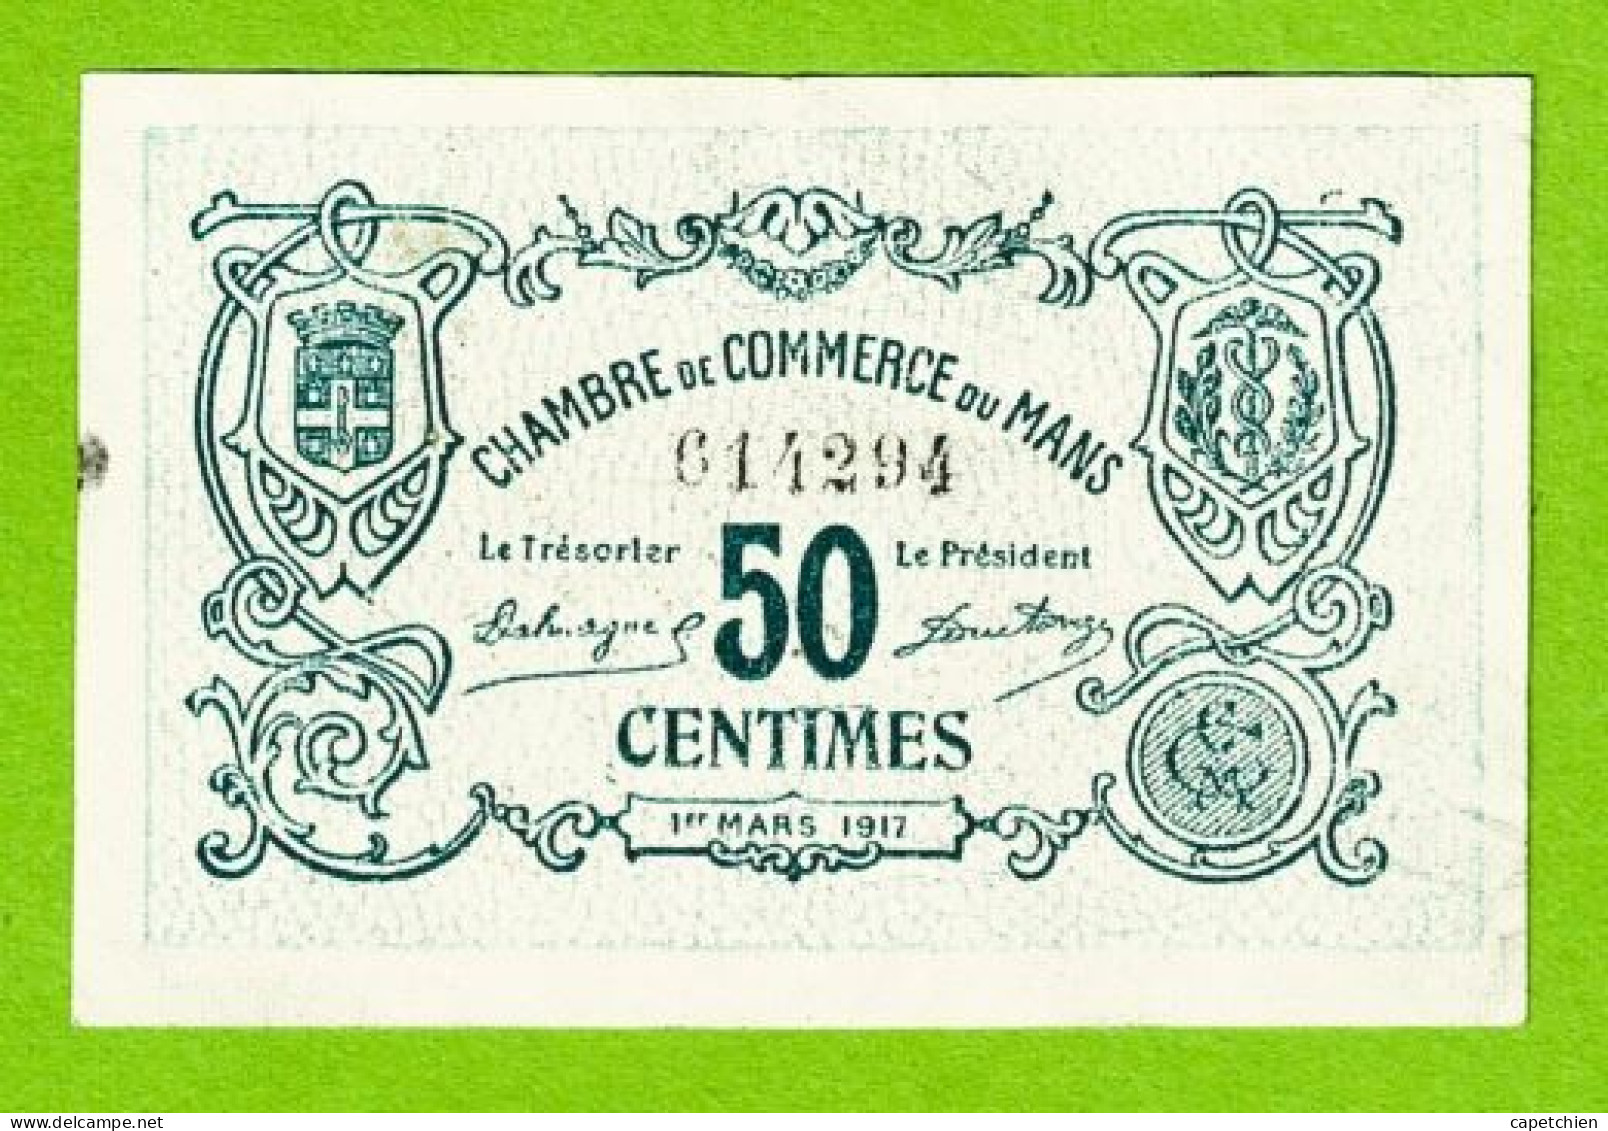 FRANCE / LE MANS / 50 CENTIMES / 1er MARS 1917 / N° 614294 - 2eme SERIE - Chambre De Commerce